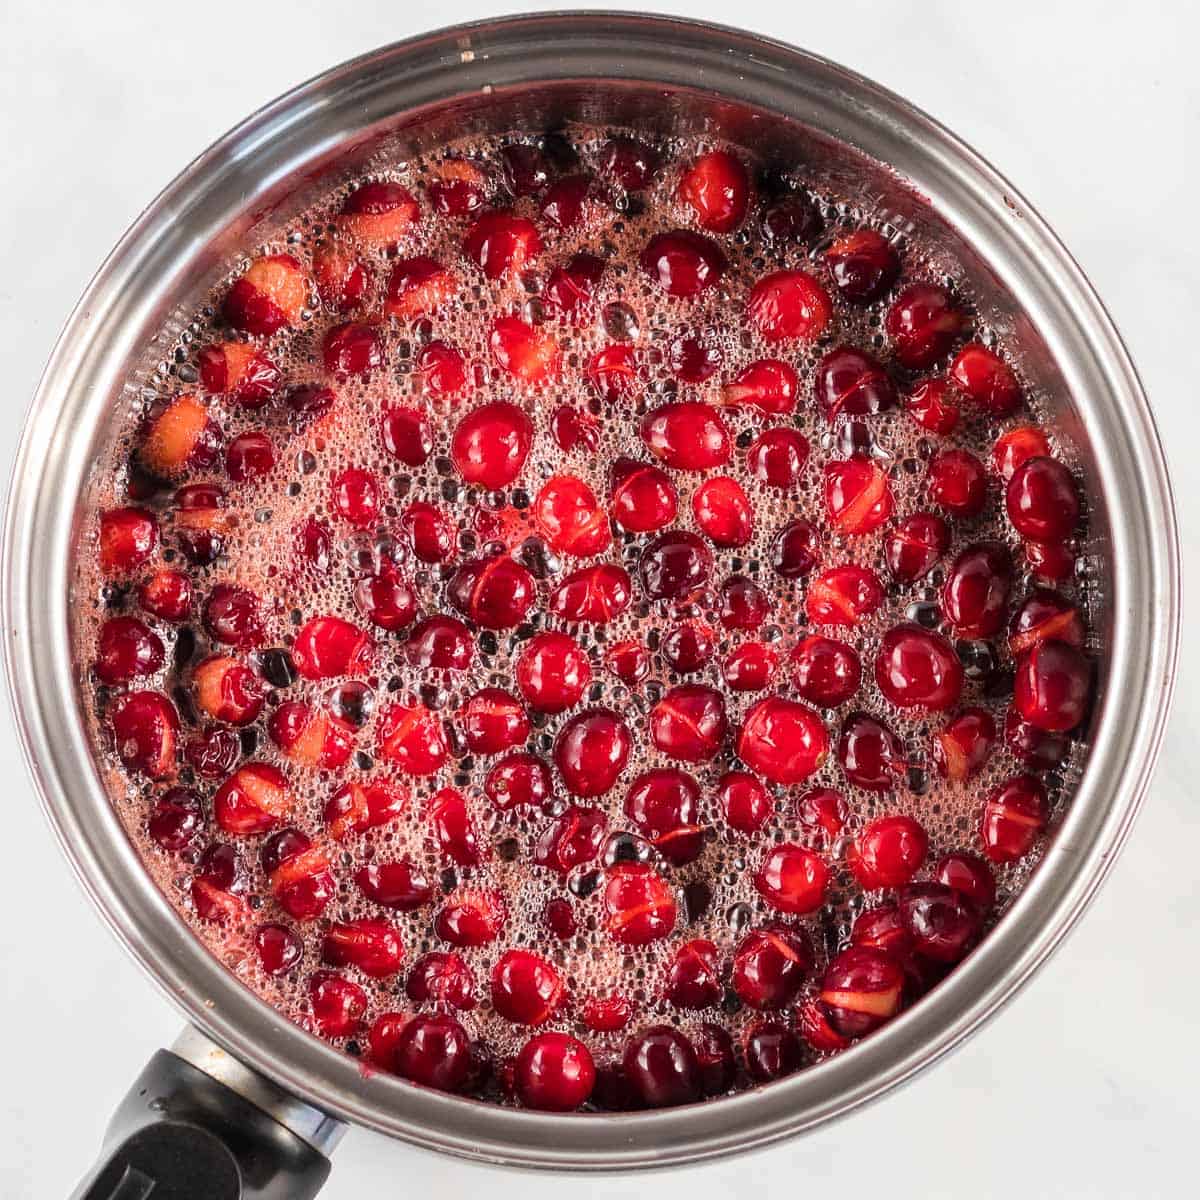 bubbling cranberry sauce